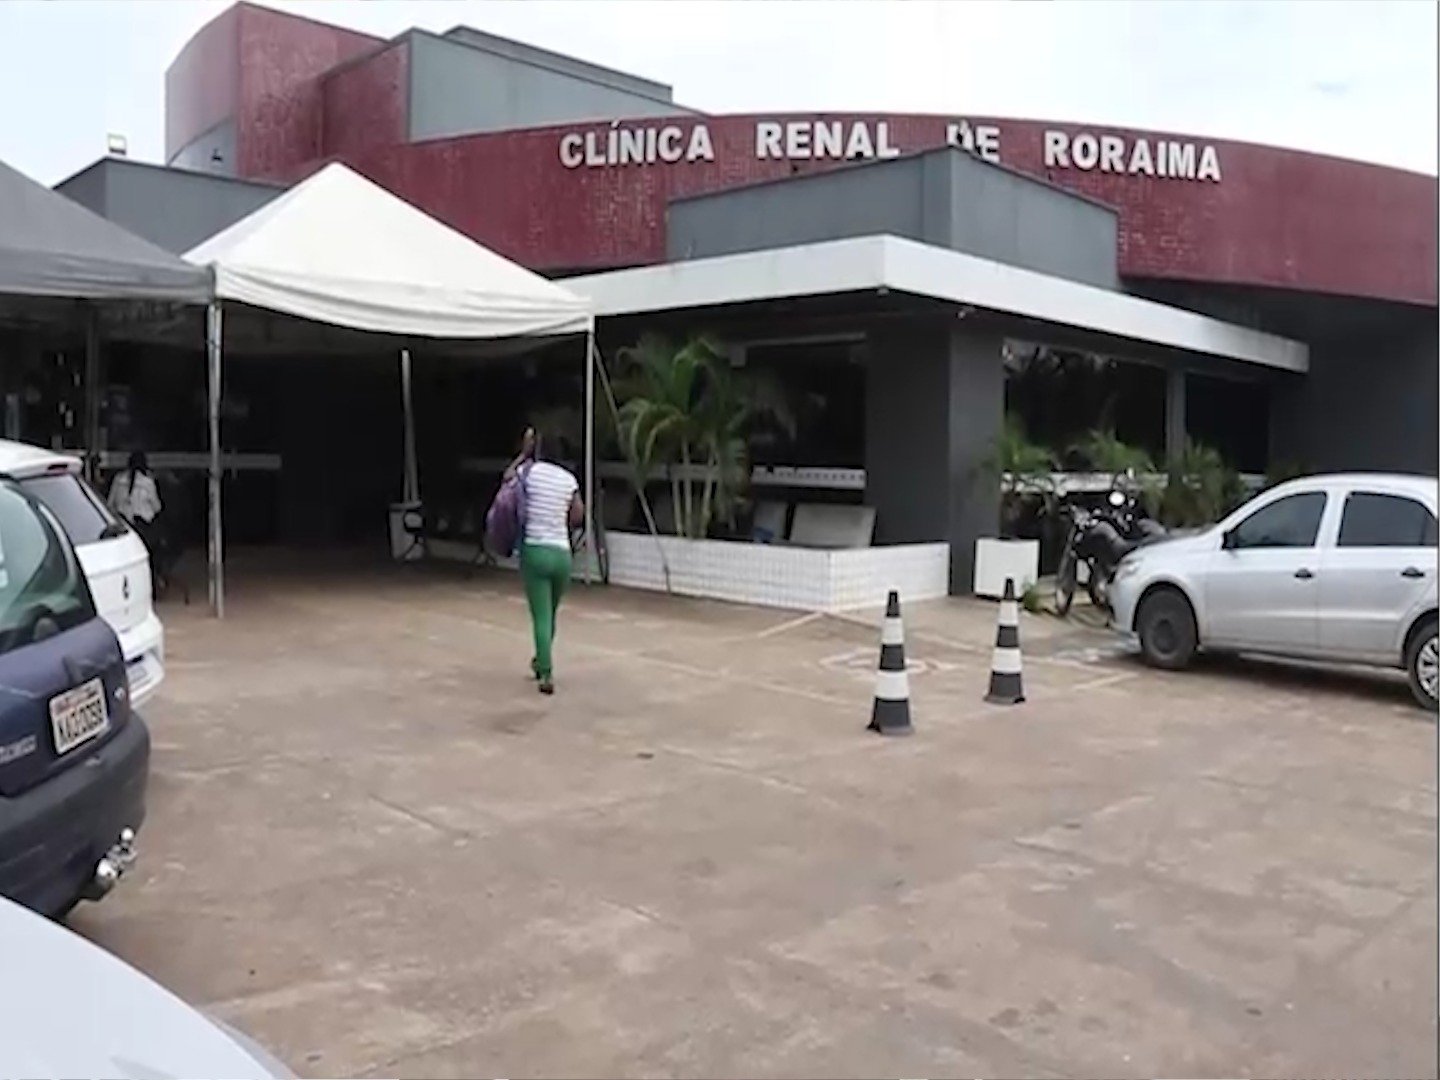 Clínica Renal de Roraima - Foto: TV Norte Boa Vista/Reprodução